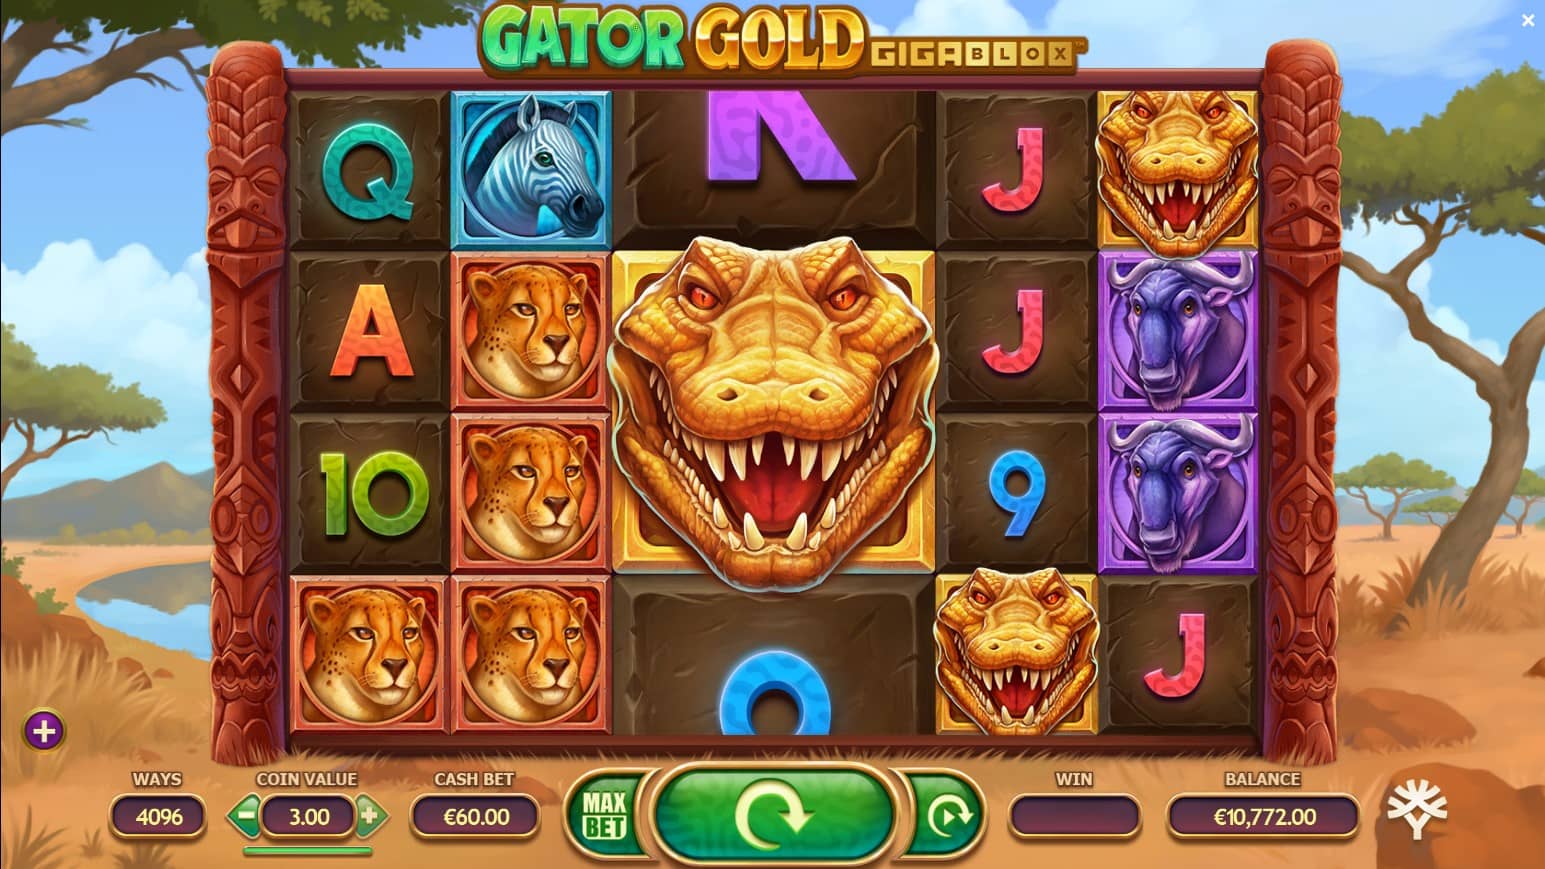 Gator Gold Gigablox gokkast